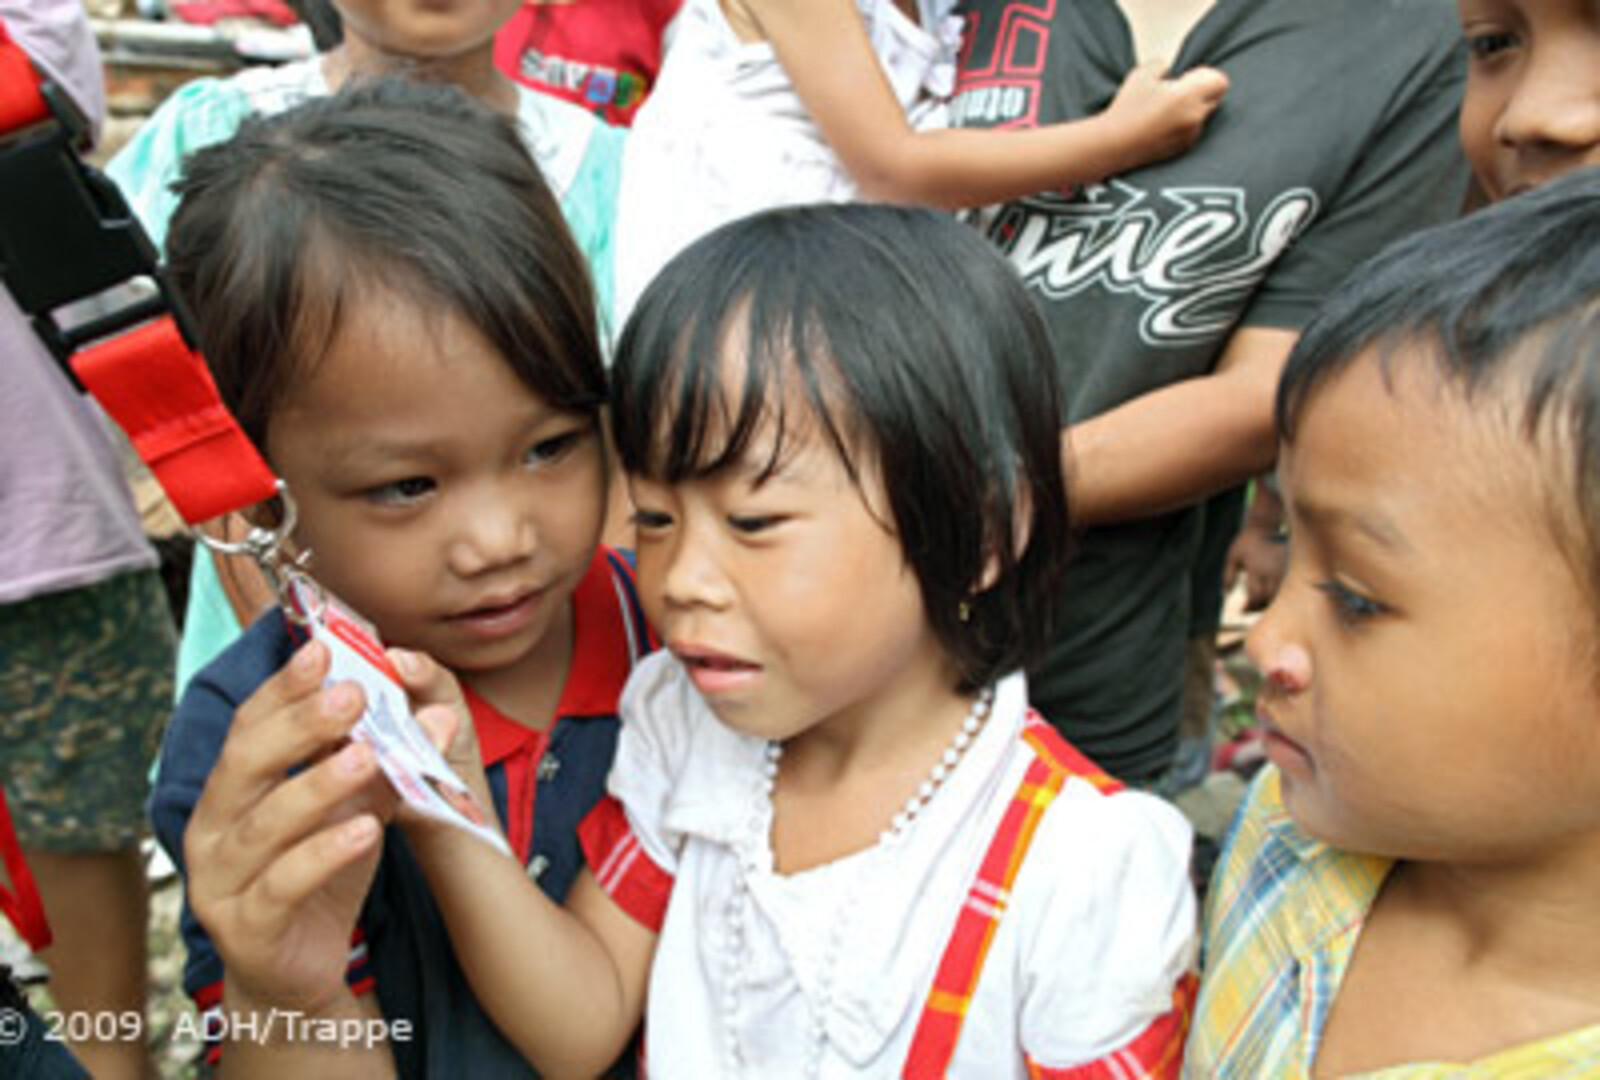 Katastrophen Südostasien: Kinder schauen sich ein Namensschild an